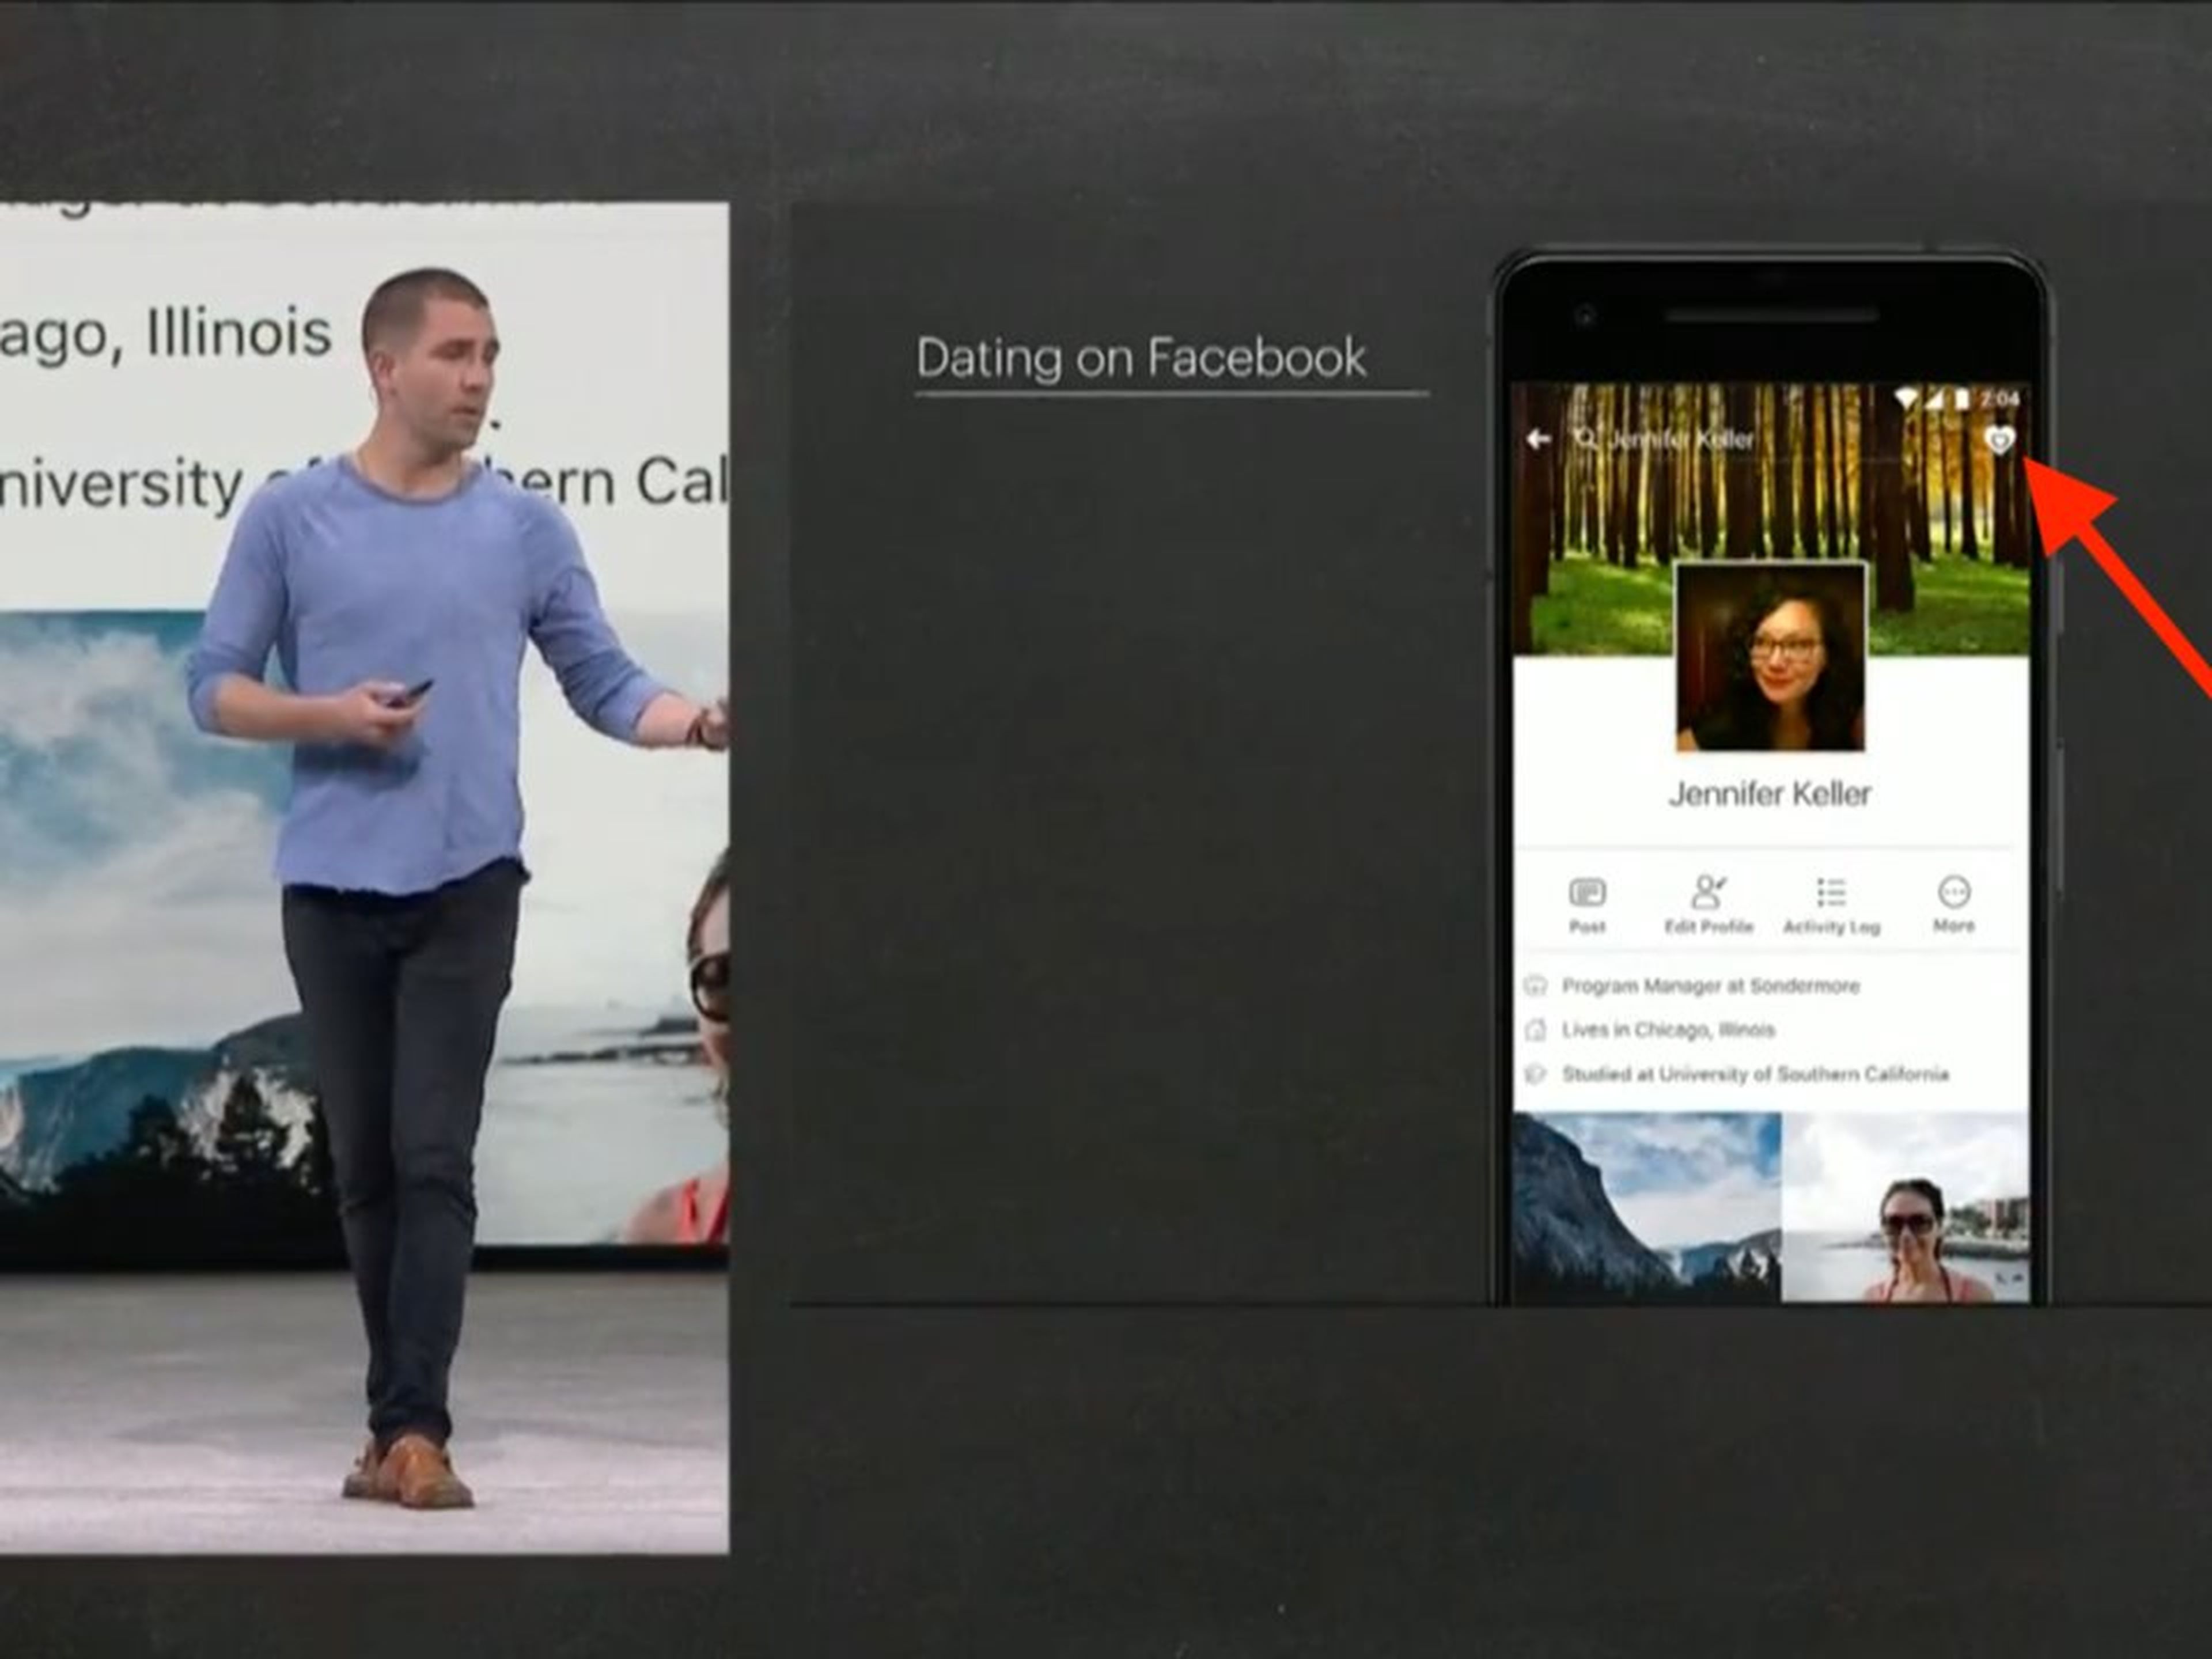 El jefe de producto de Facebook, Chris Cox, presentando la app de citas "Dating home".